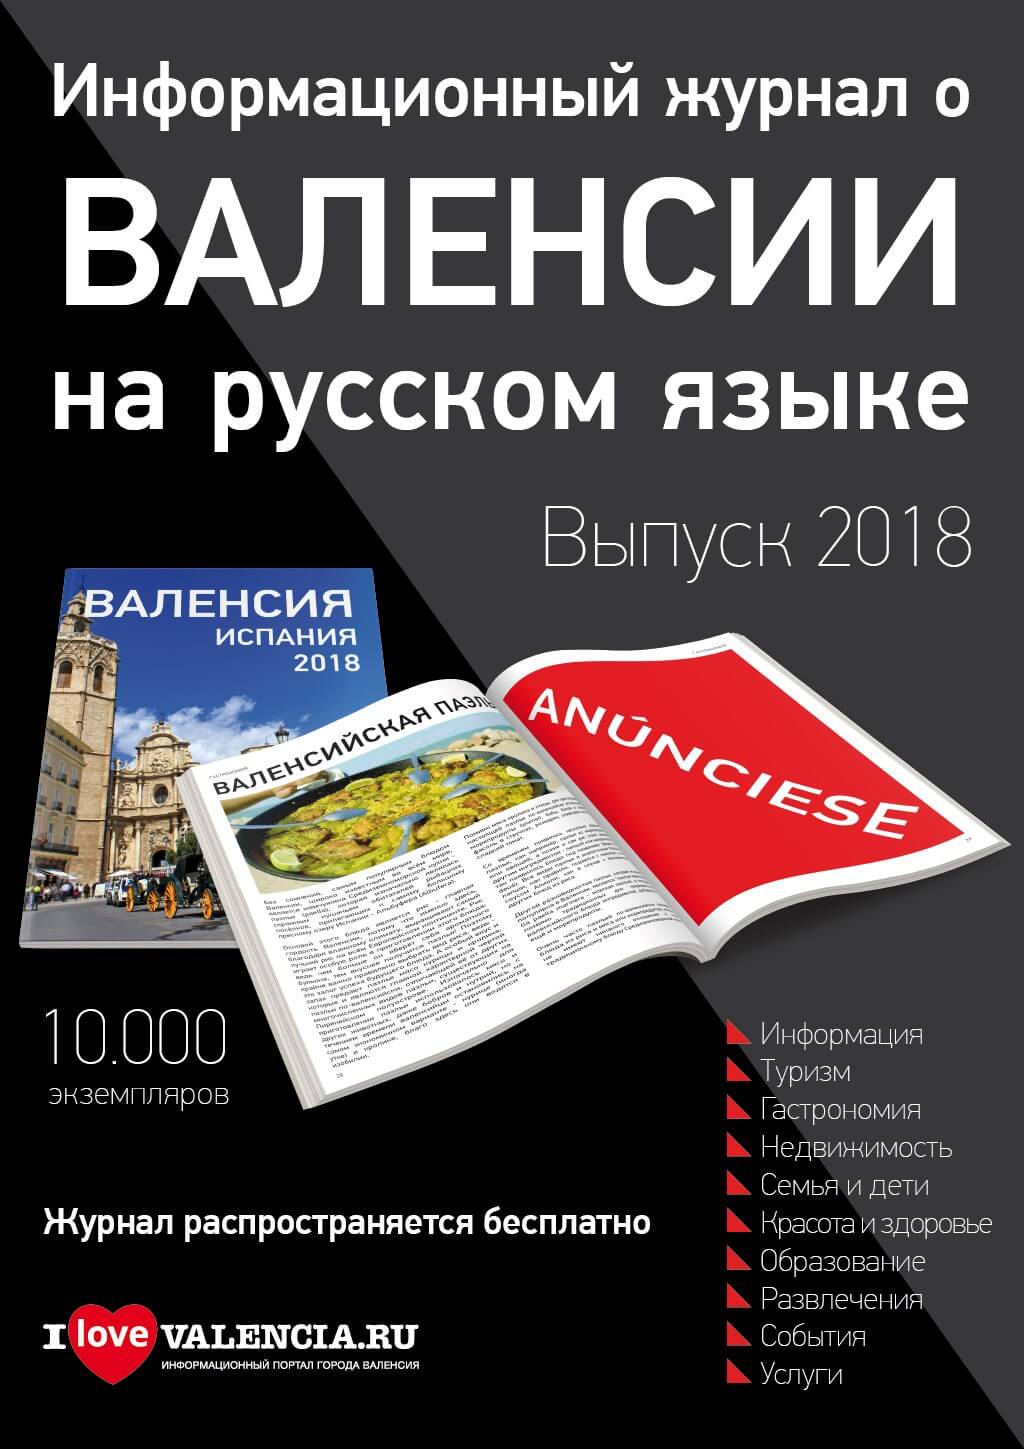 Коммерческое предложение о размещении рекламы в информационном журнале о городе Валенсия в Испании на русском языке